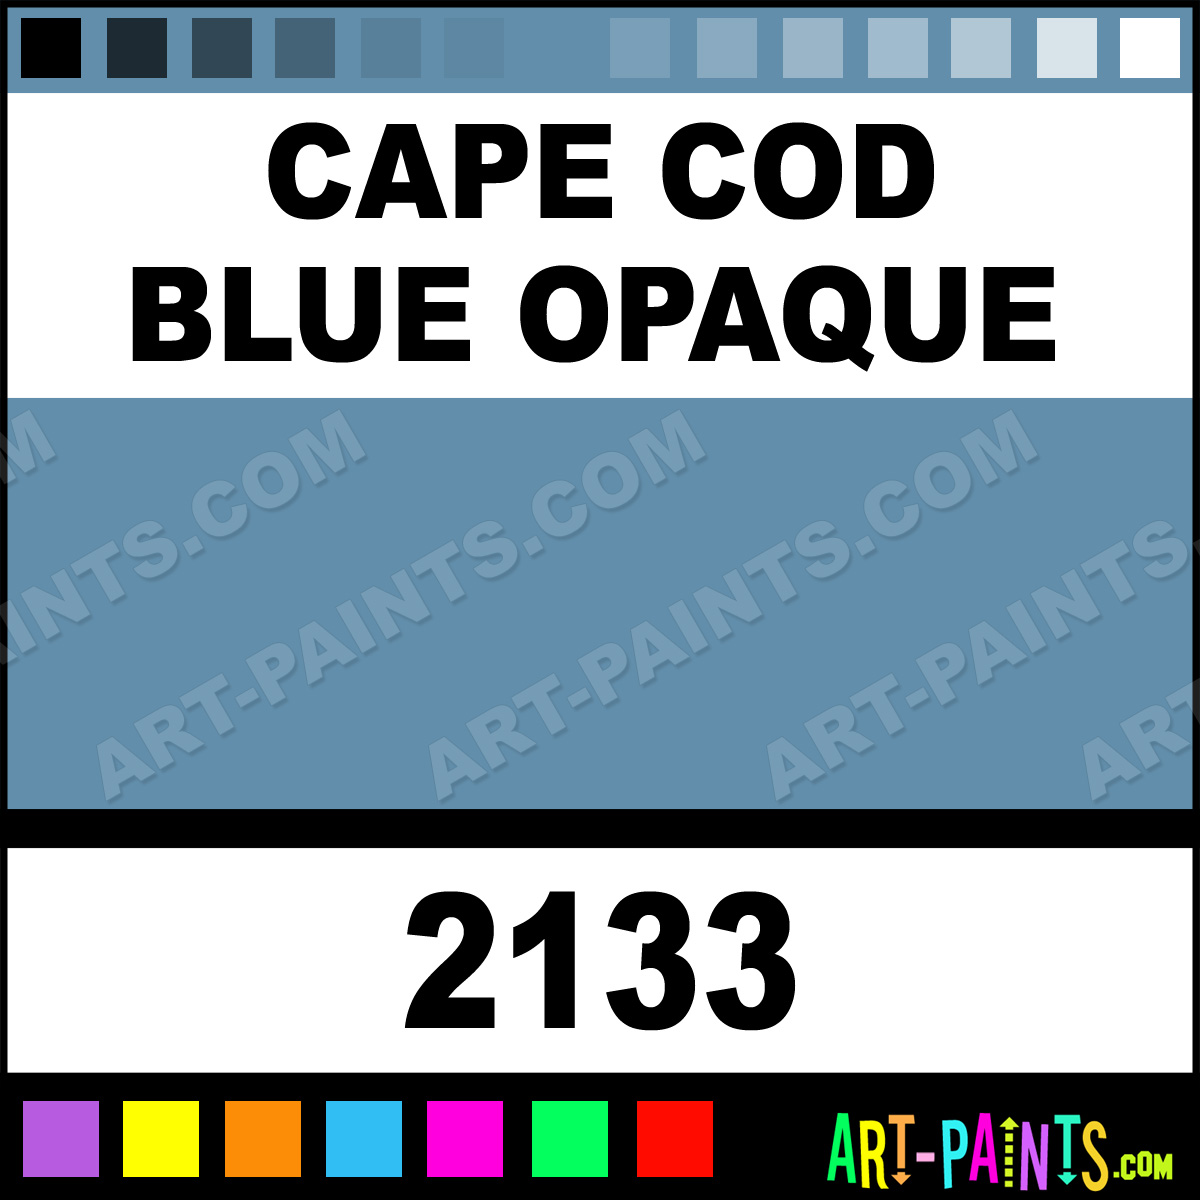 Cape Cod Blue Opaque Ceramcoat Acrylic Paints - 2133 ...